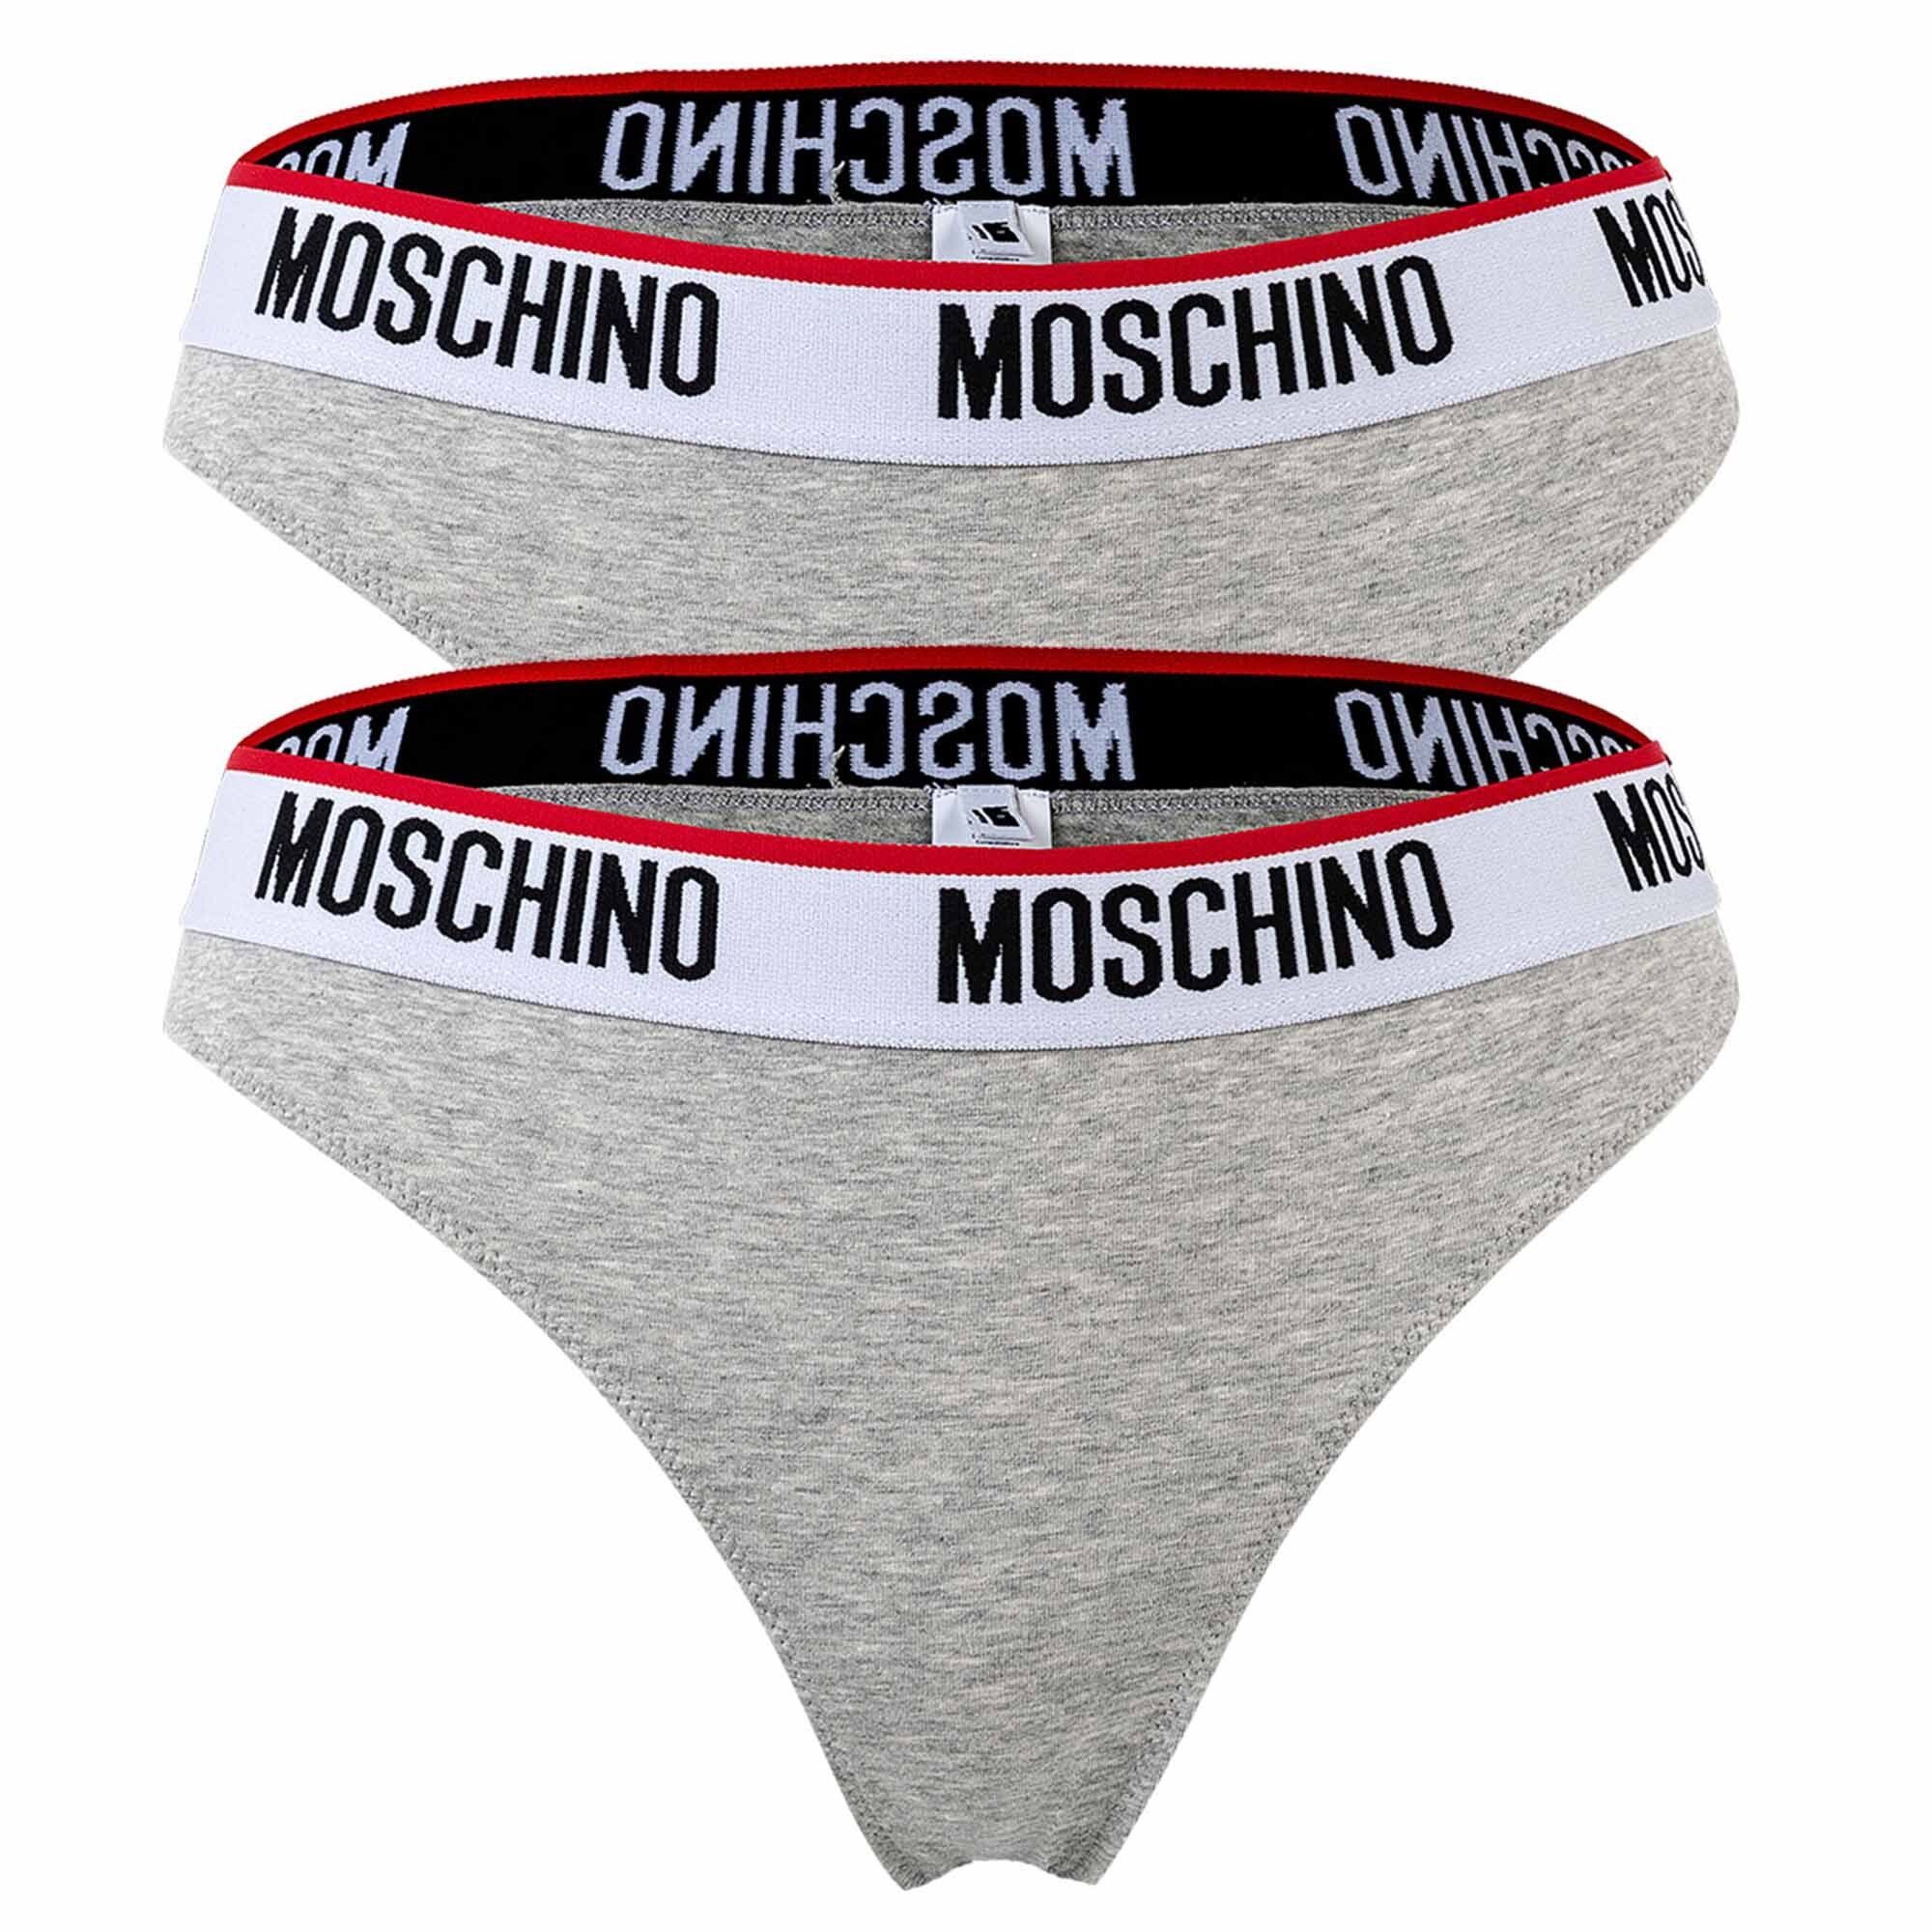 Moschino Slip Damen Slip 2er Pack - Unterhose, Baumwollmischung Grau